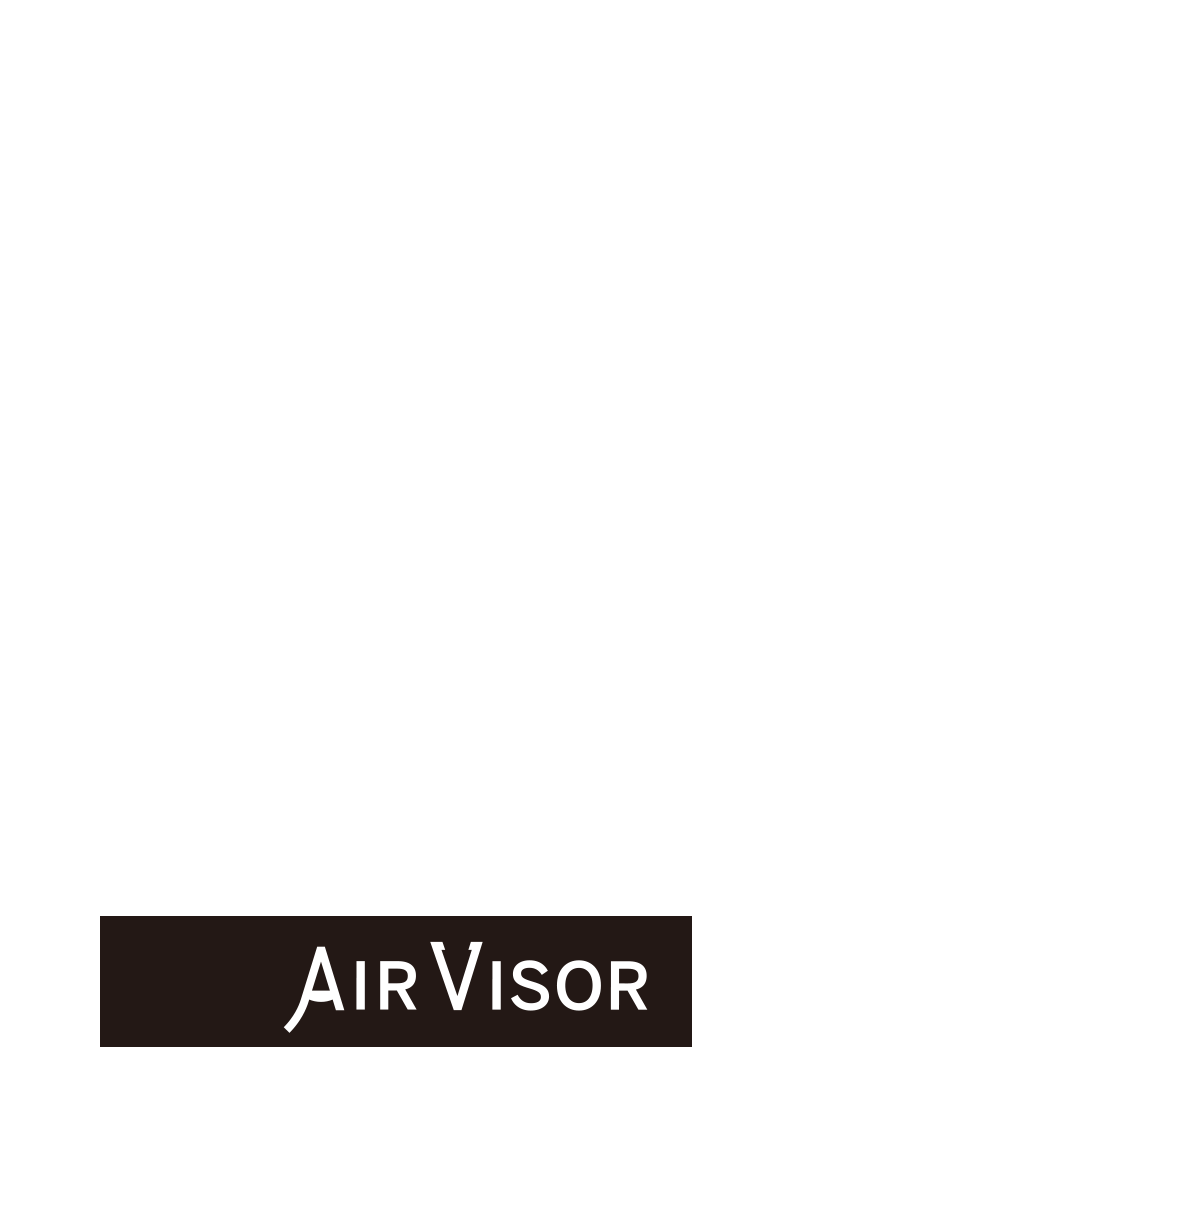 AIR VISOR（エア・バイザー）